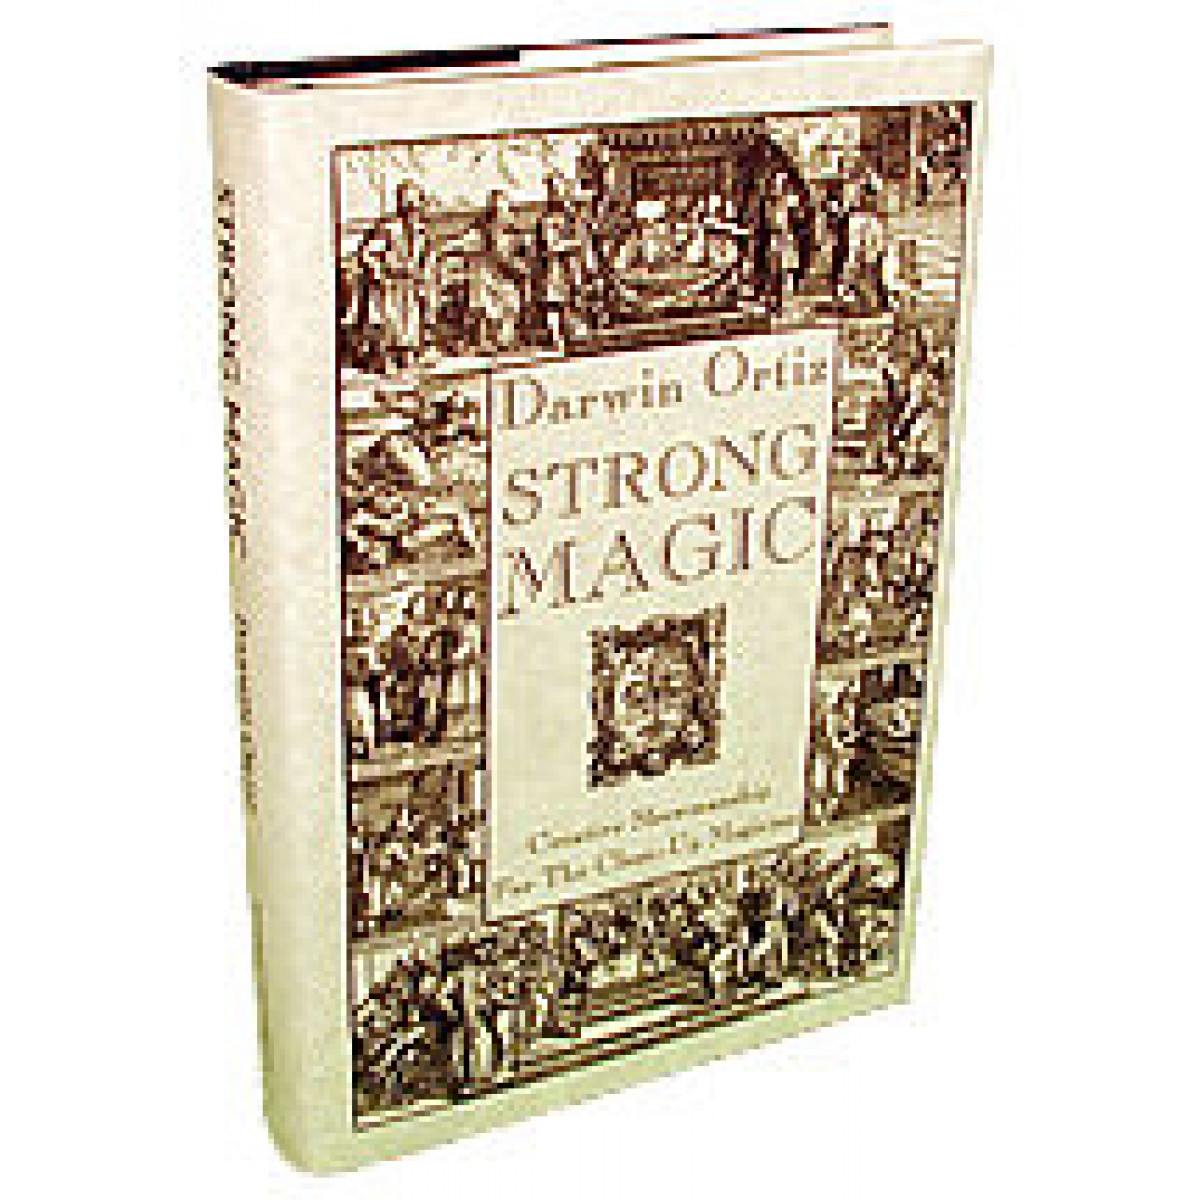 Strong magic. My Magic is strong. My Magic strong. Сильные фокусы Дравлинг Ортиз книга.